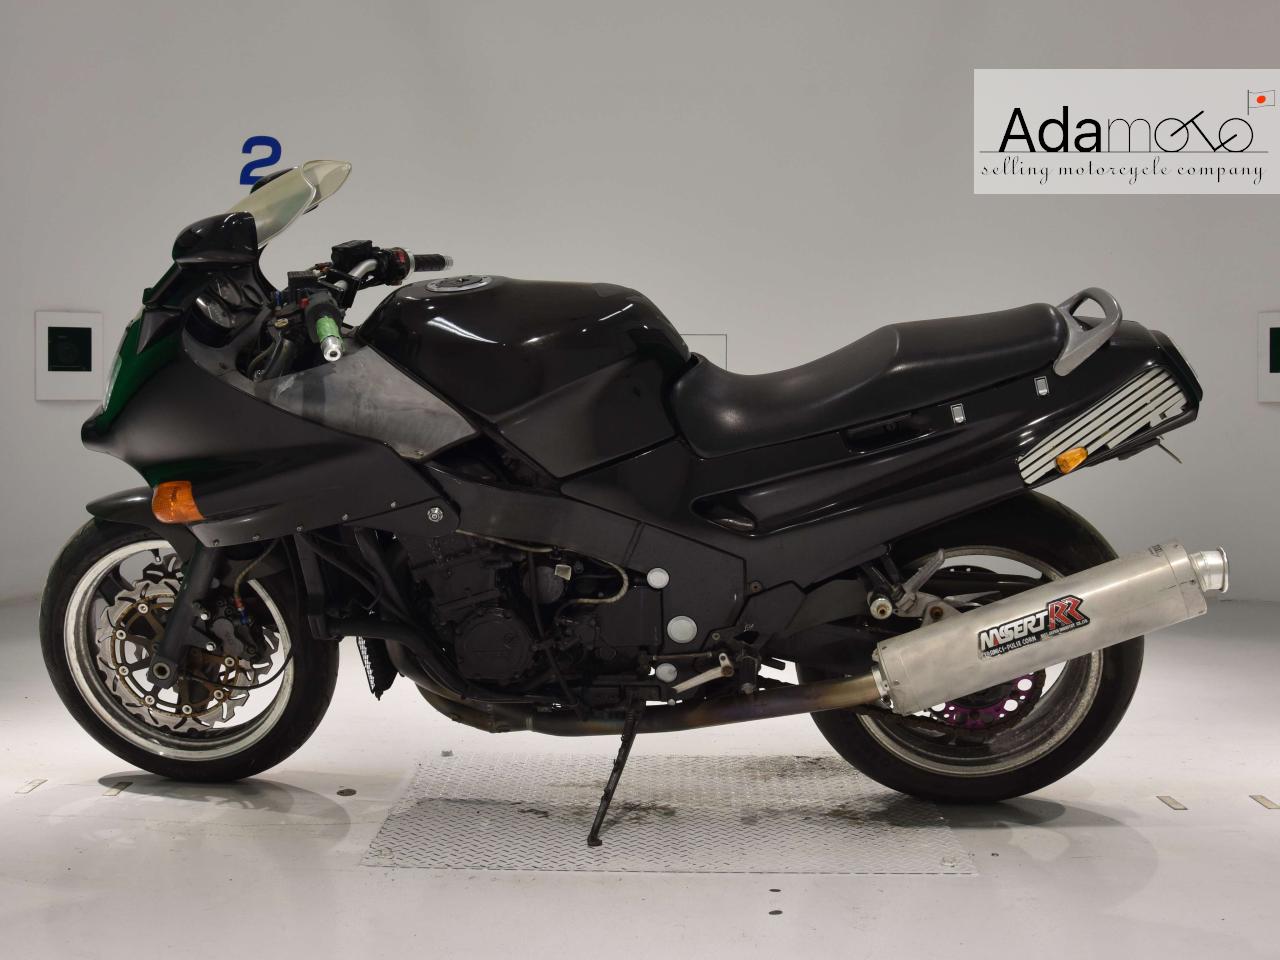 Kawasaki ZX 11 1 - Adamoto - Motorcycles from Japan